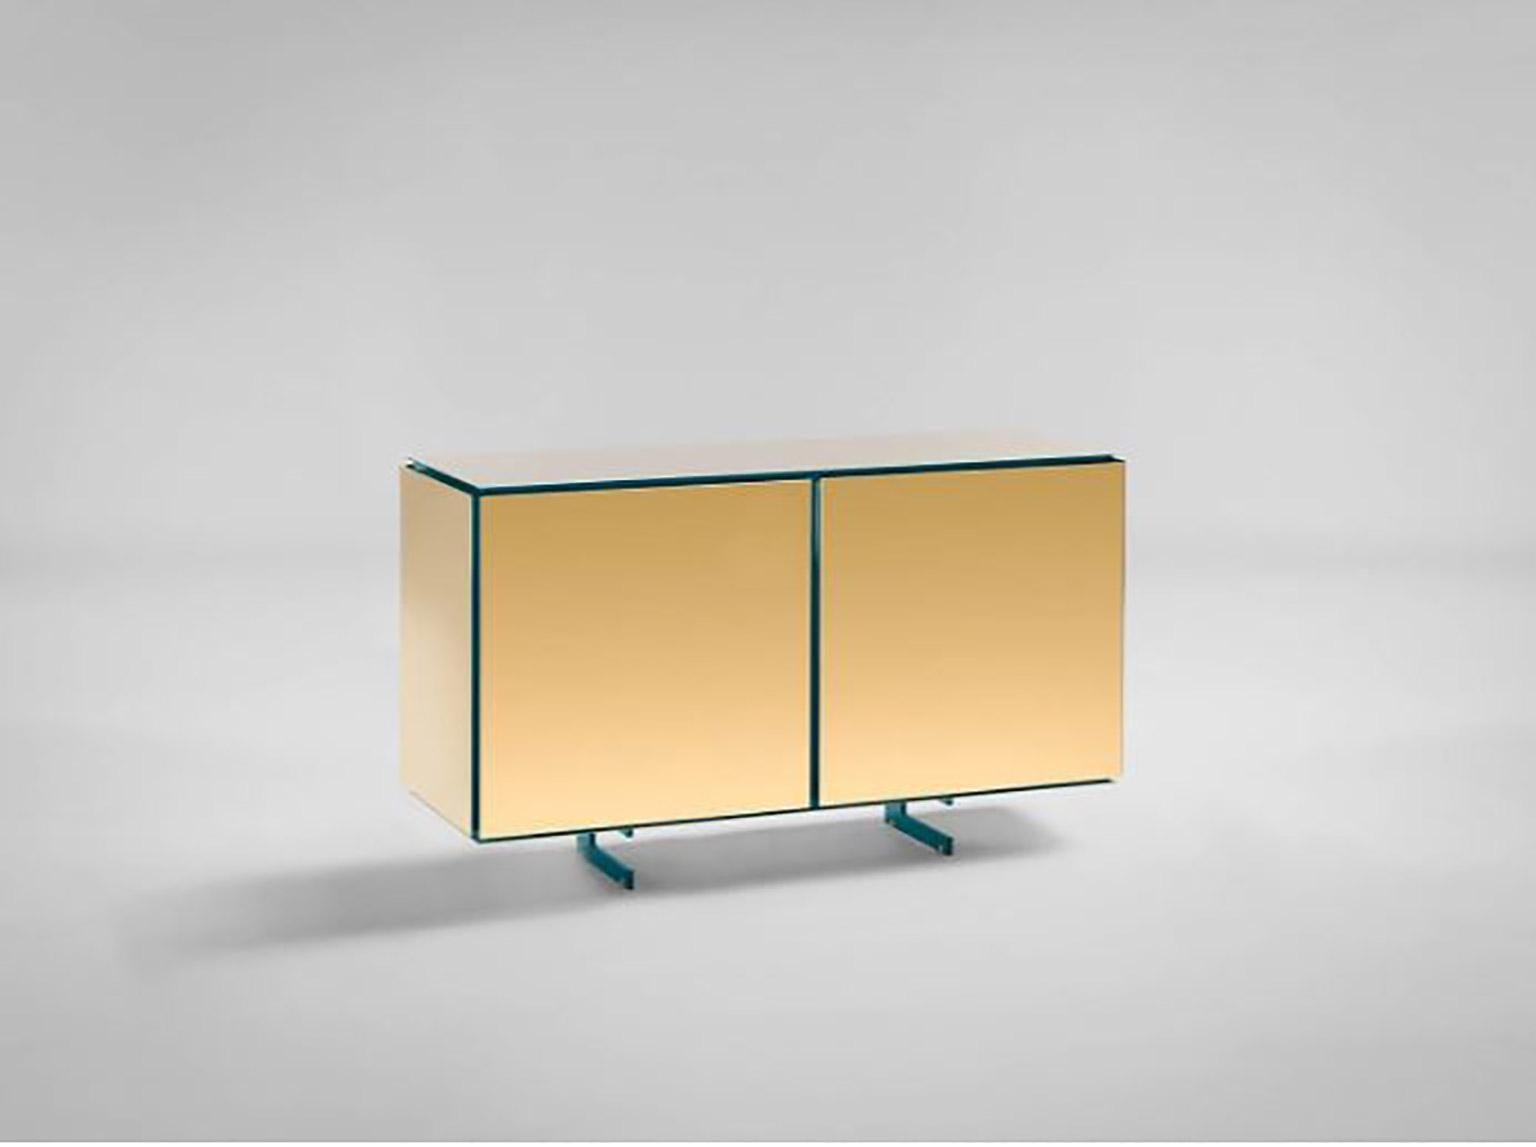 SEM Gold Kollektion, zweitüriges Sideboard. Struktur aus lackiertem Verdemare-Holz, glänzende Oberfläche. Weitere Farbvarianten verfügbar. Außenschale aus polierter 24-karätiger Gelbvergoldung in Kombination mit ultra-reflektierendem Stahl. Die